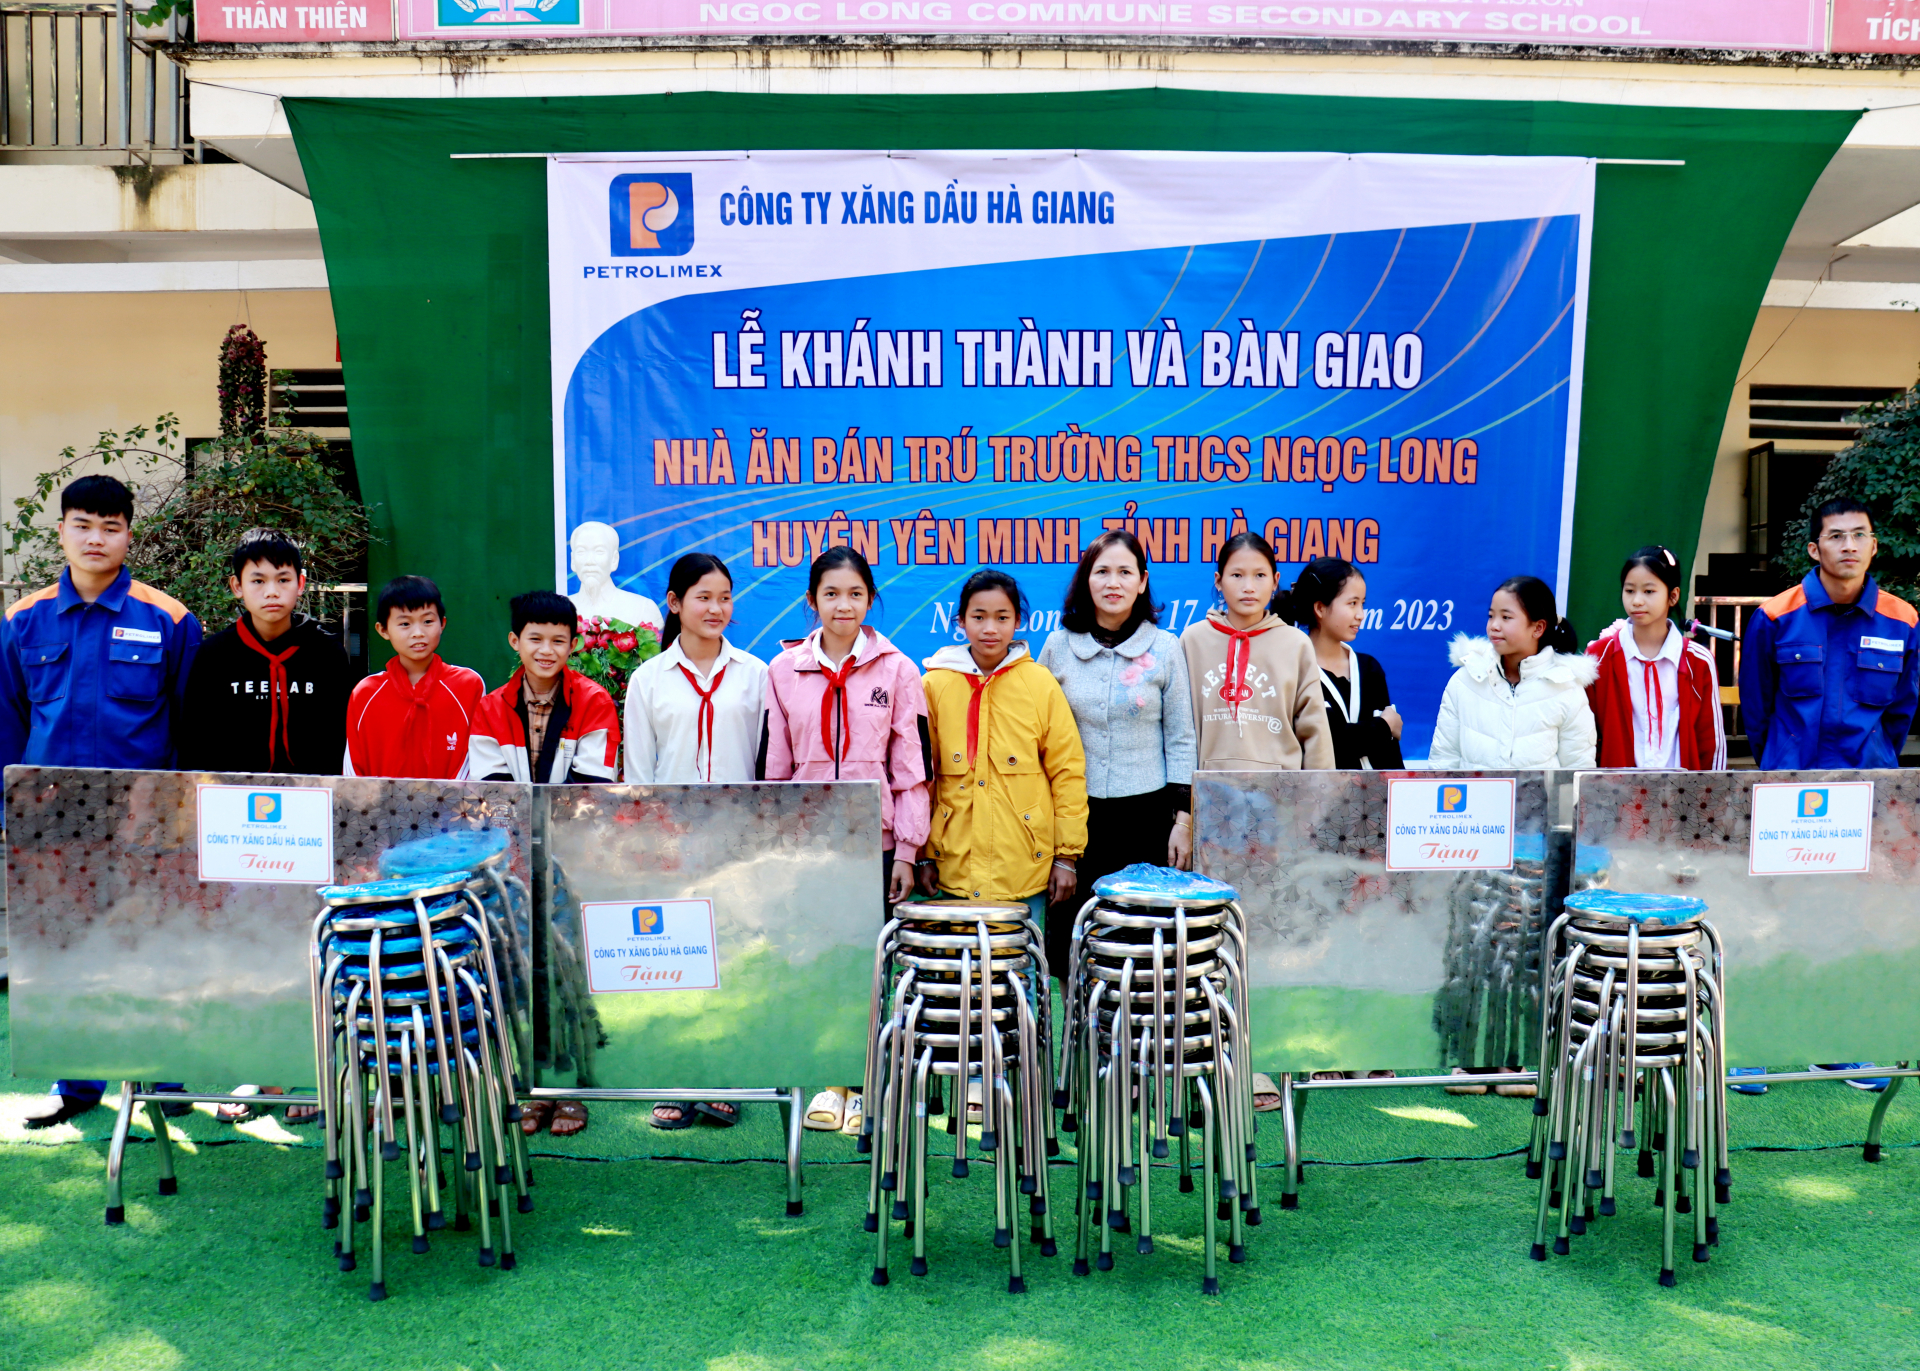 Lãnh đạo Công ty Xăng dầu Hà Giang tặng 10 bộ bàn ghế inox cho Trường THCS Ngọc Long.